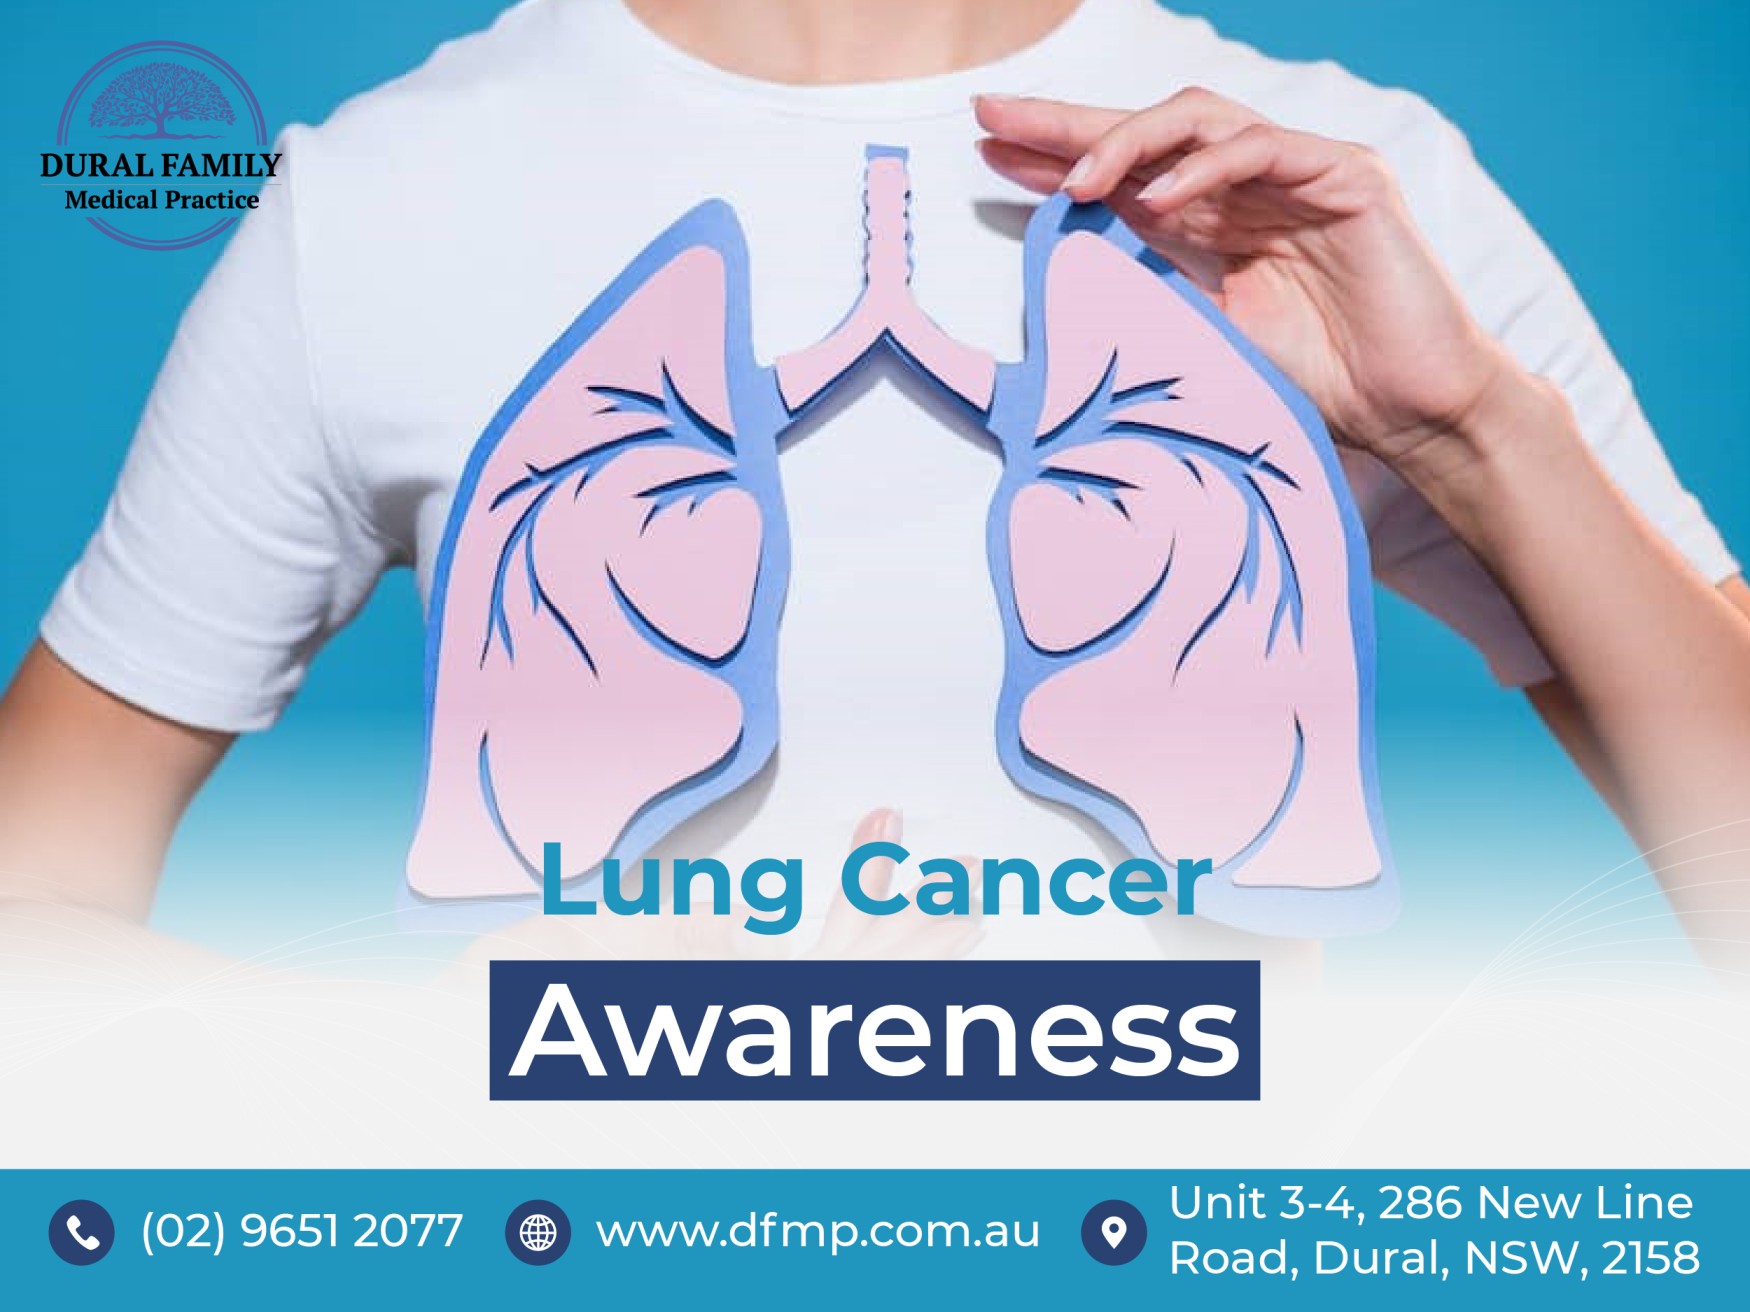 Lung cancer awareness